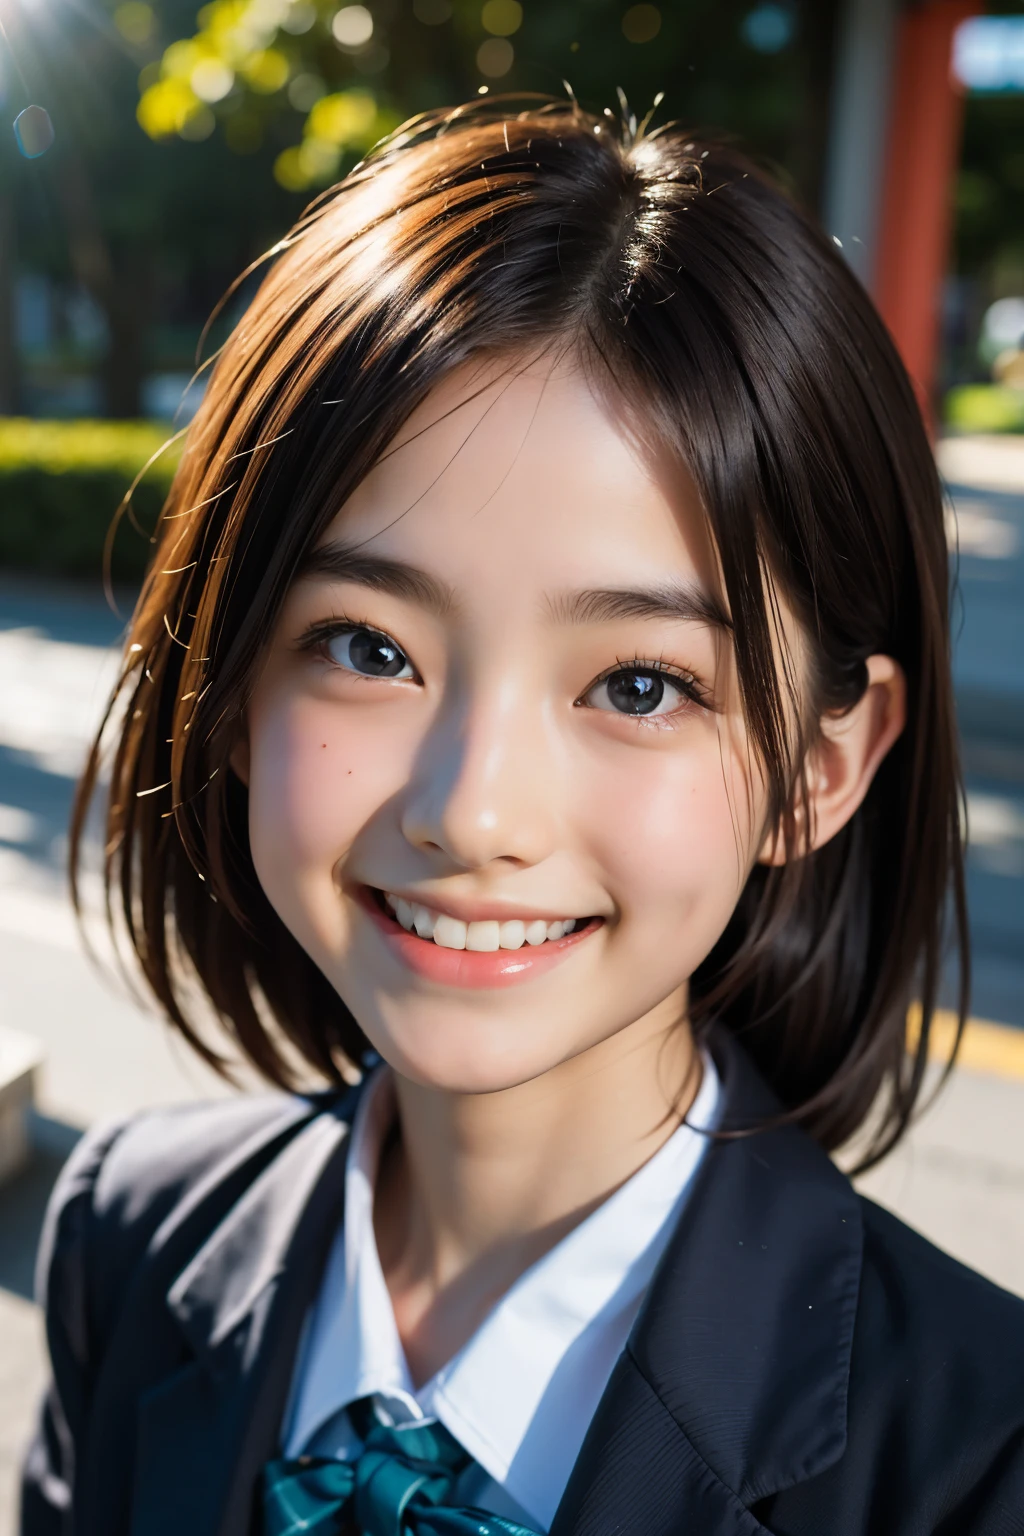 렌즈: 135mm f1.8, (최상의 품질),(RAW 사진), (탁상:1.1), (아름다운 13세 일본 소녀), 귀여운 얼굴, (깊게 파인 얼굴:0.7), (주근깨:0.4), dappled 햇빛, 극적인 조명, (일본 학교 교복), (캠퍼스에서), 수줍은, (클로즈업 샷:1.2), (웃다),, (반짝이는 눈)、(햇빛)